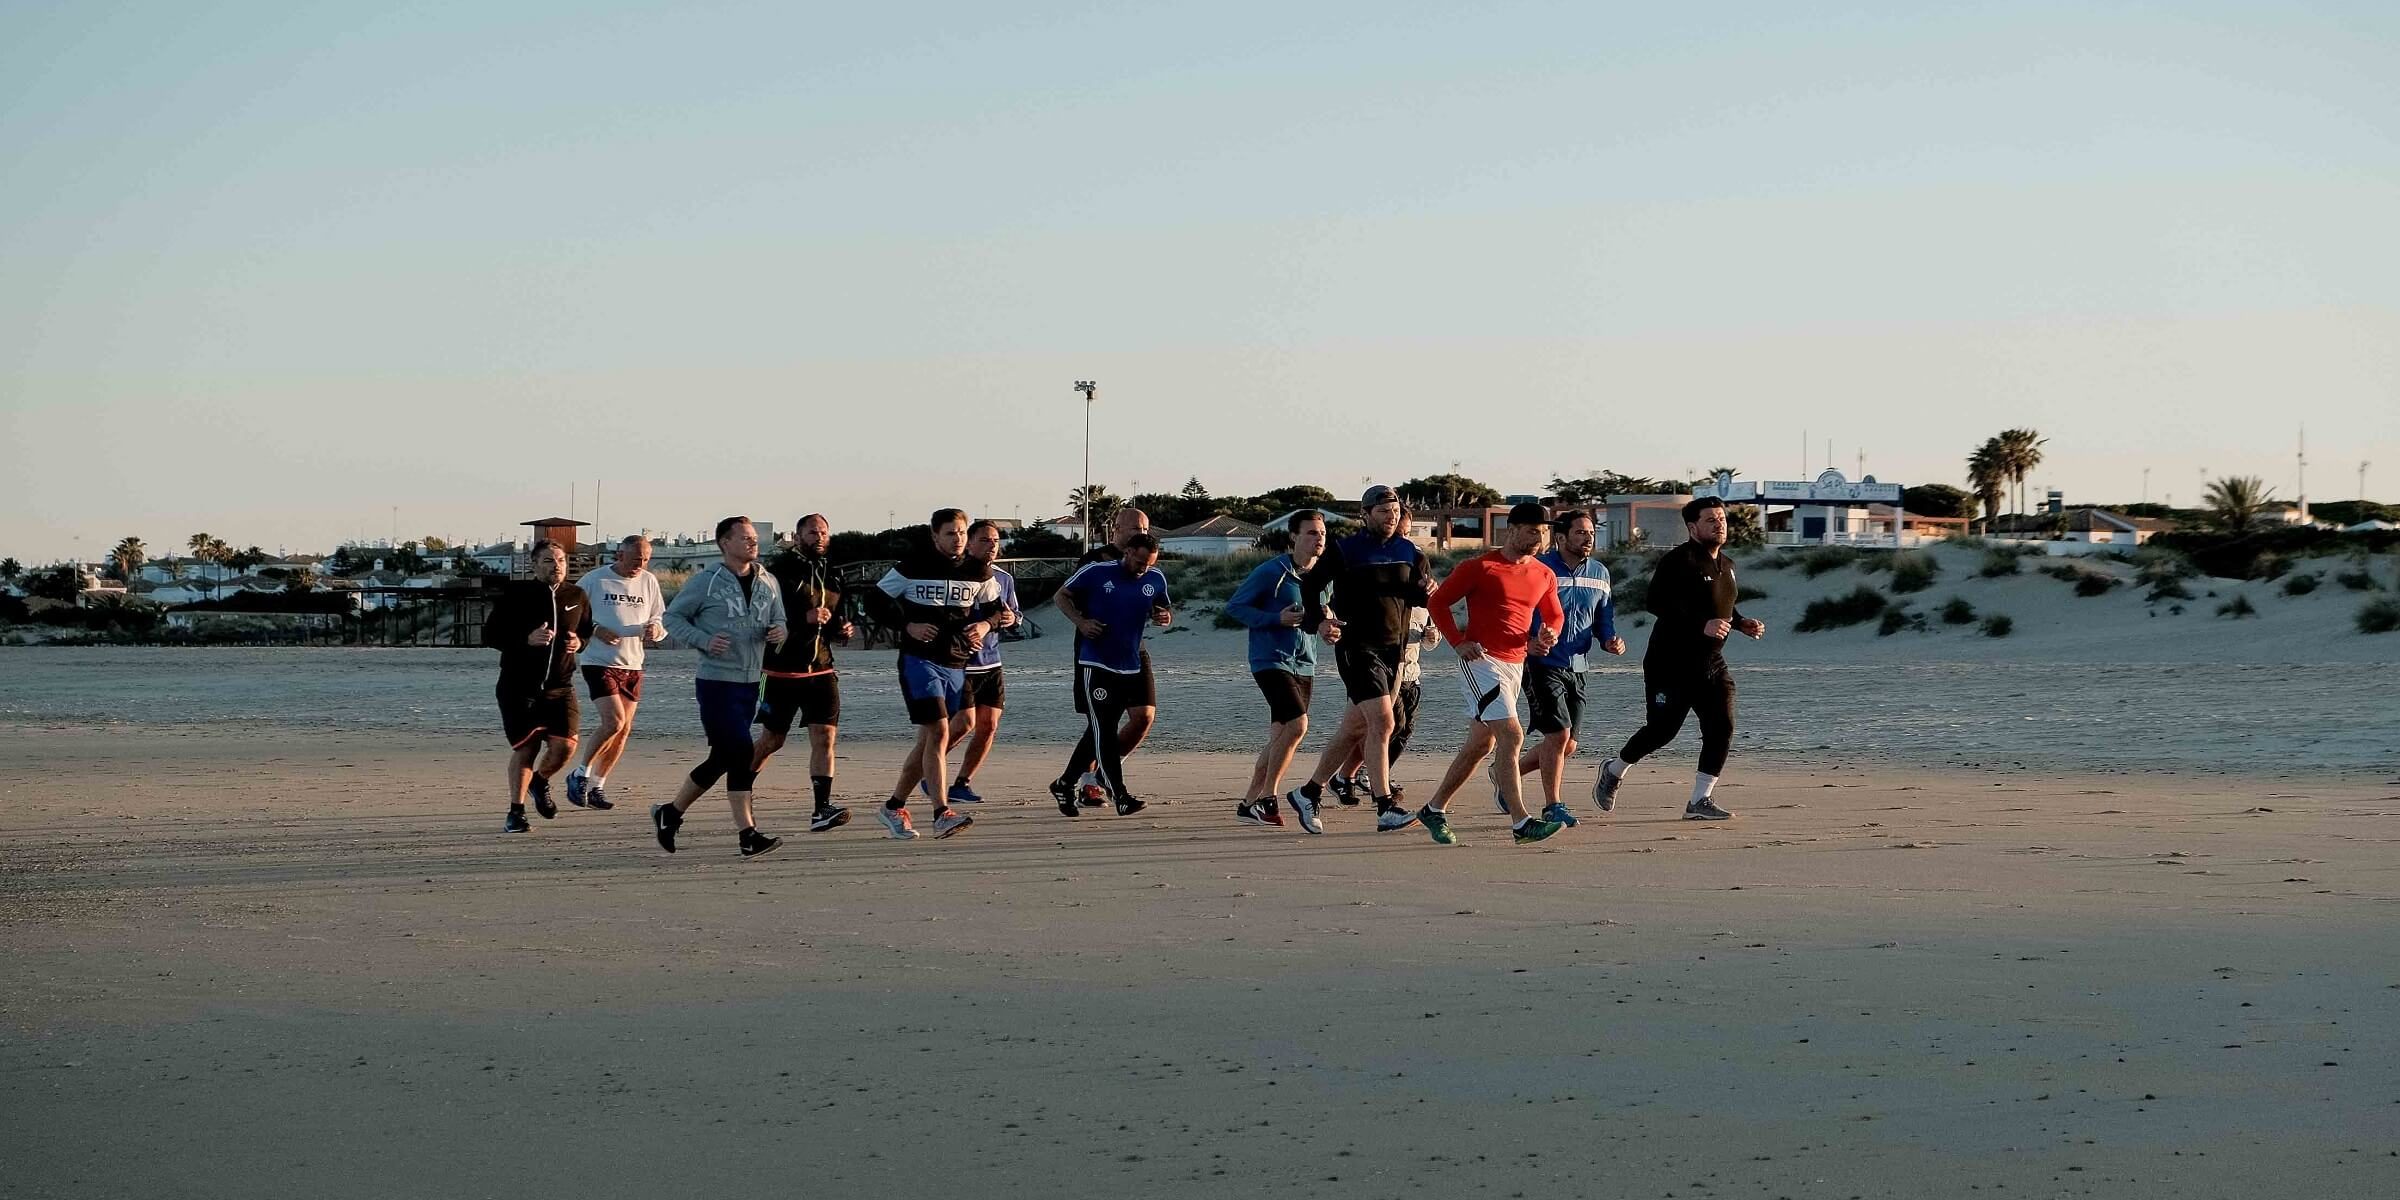 Laufen am Strand beim Men's Health Camp